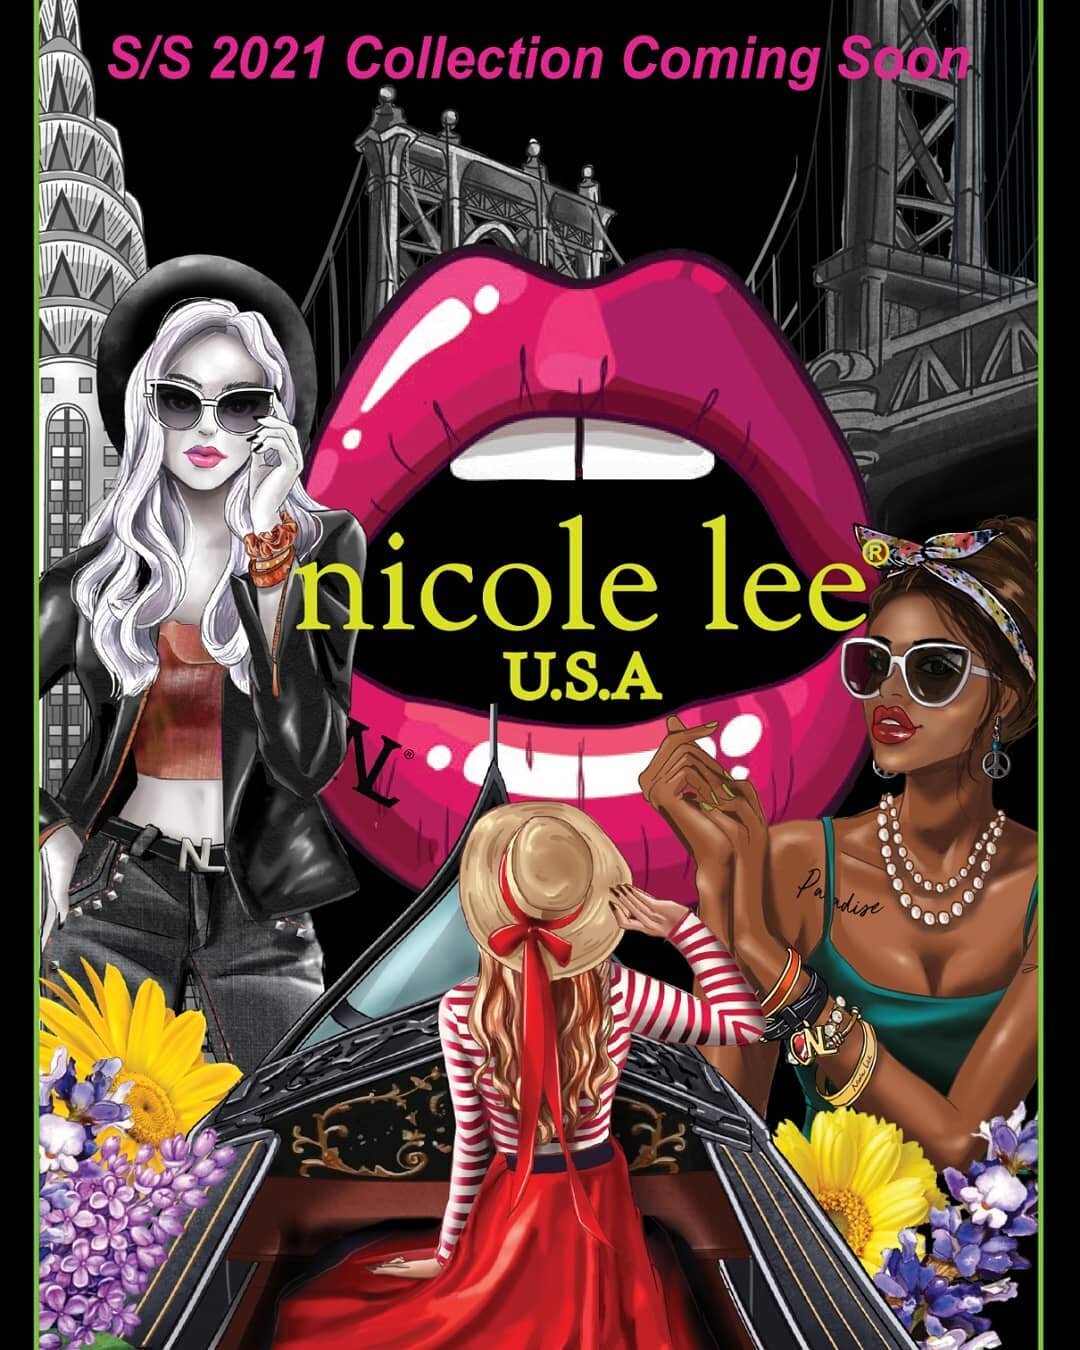 La nueva colecci&oacute;n de Nicole Lee est&aacute; por llegar! Ponte al d&iacute;a con nuestros nuevos dise&ntilde;os y estampados que est&agrave;n por venir! 😍👛👜

#NicoleLeeUSA #LoveMeHateMe #NLLook #NicoleLeeEspana #handbagfashion #fashionprint